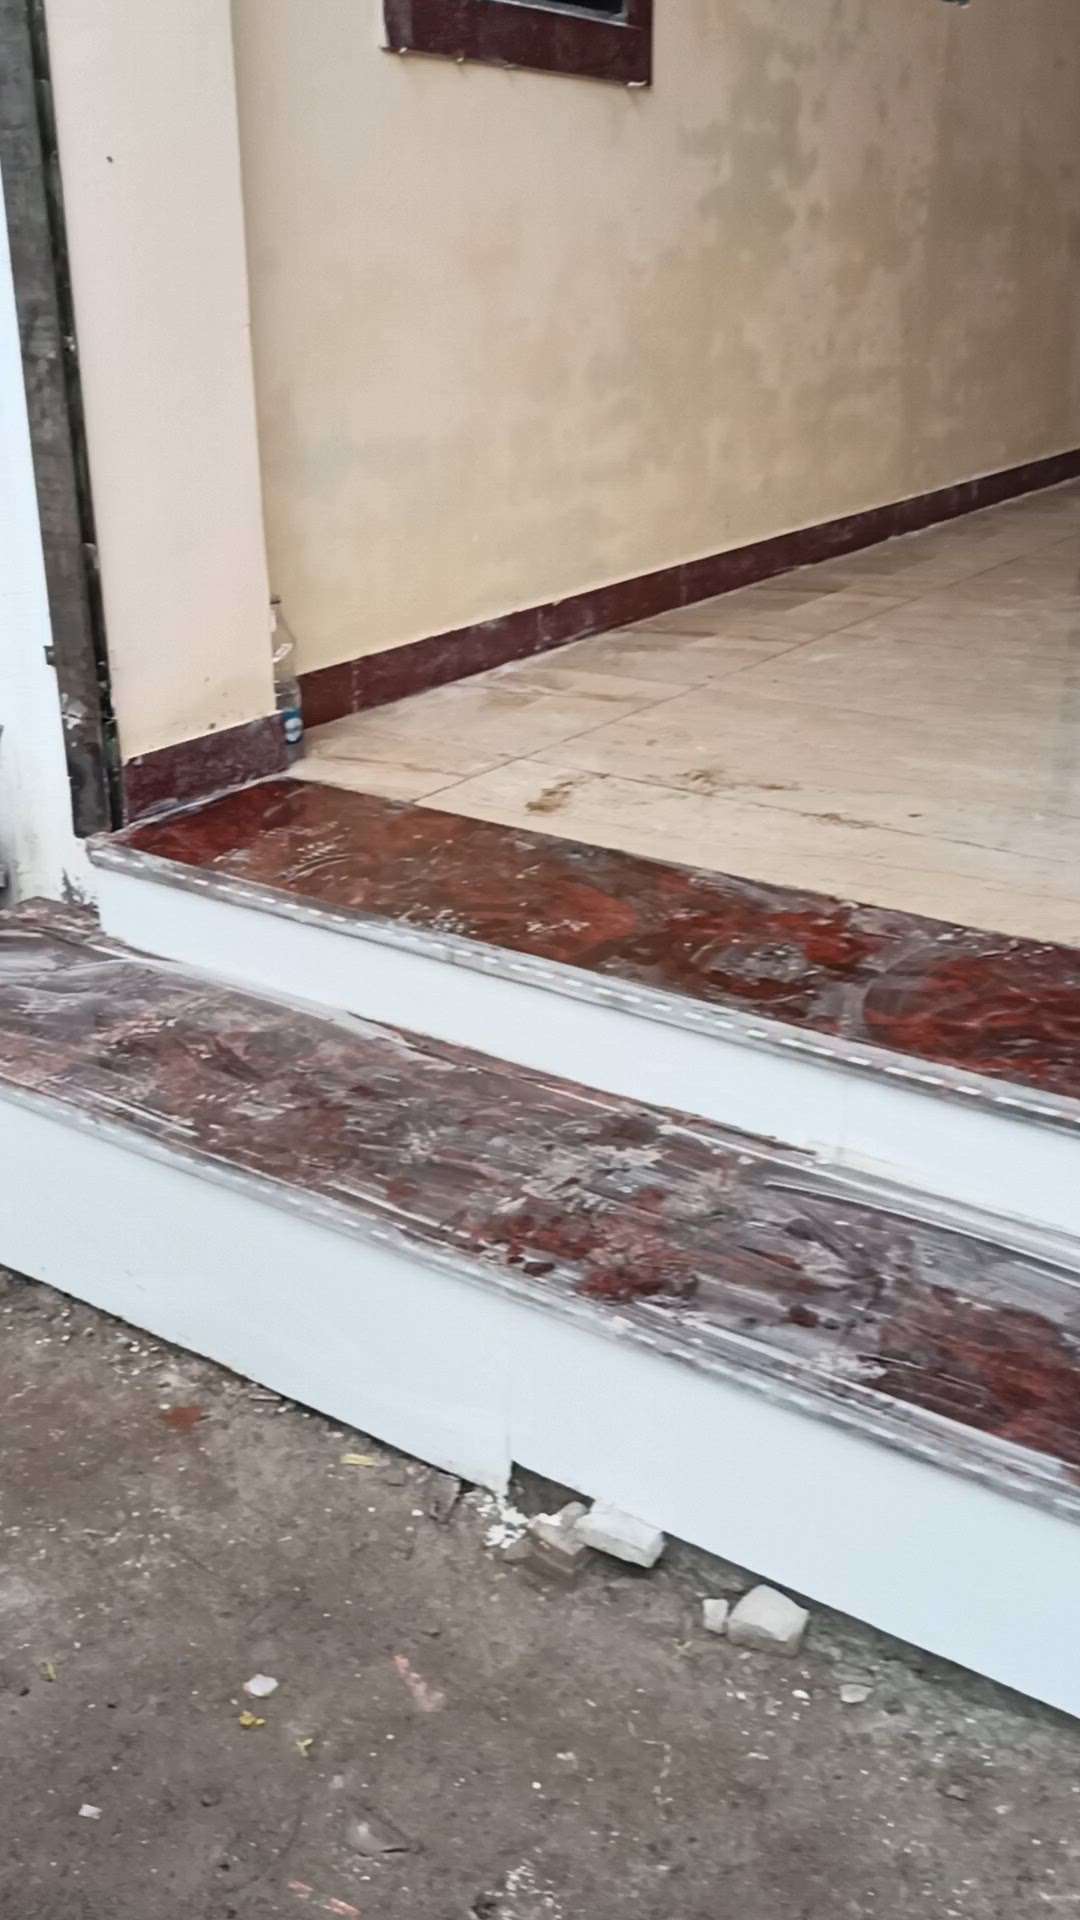 #FlooringTiles  #BathroomTIles  #TVStand  #GraniteFloors  #WoodenKitchen